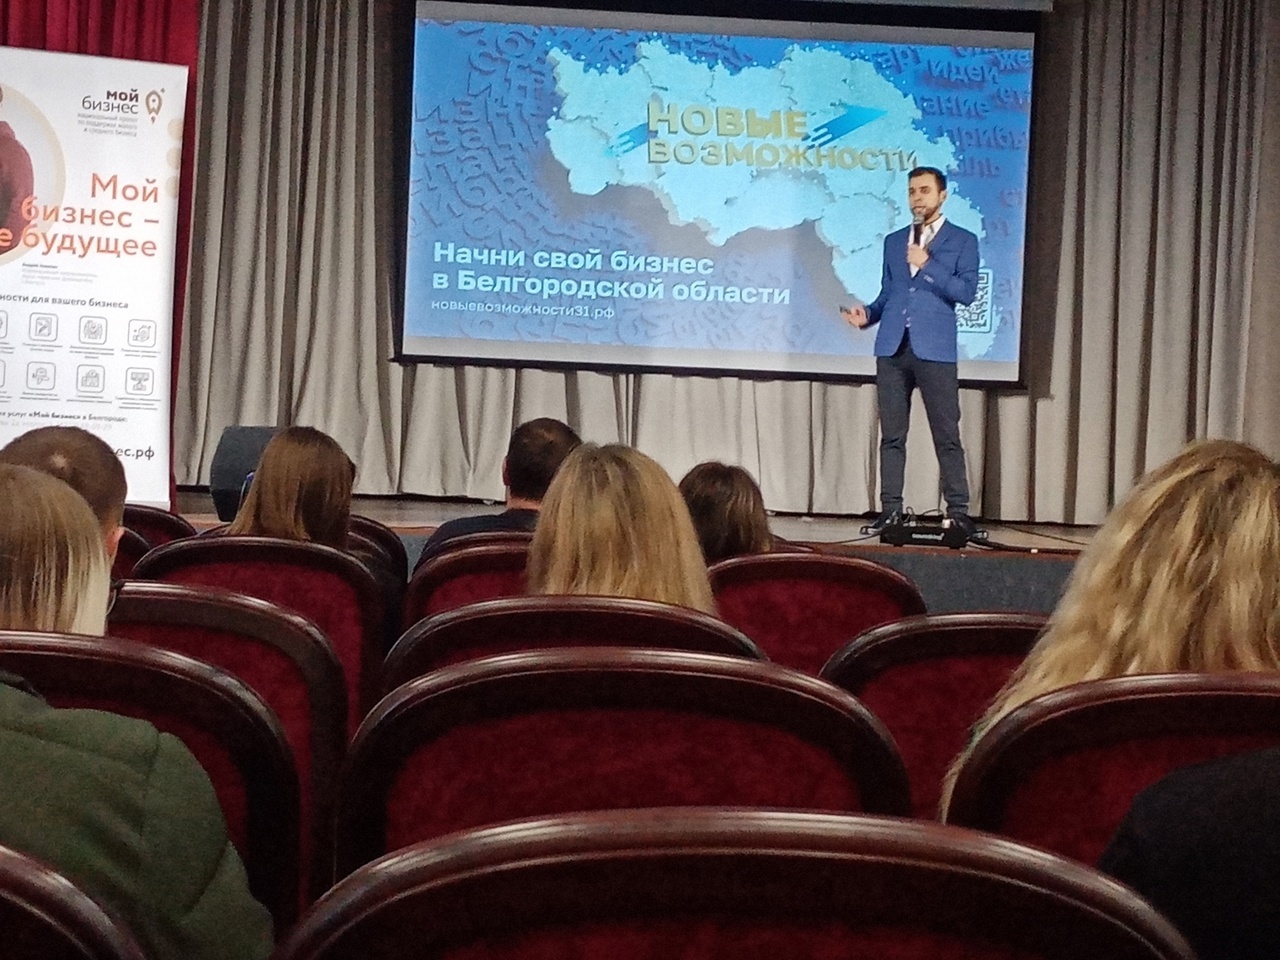 В Алексеевке состоялась конференция &amp;quot;Новые возможности 3.0&amp;quot;